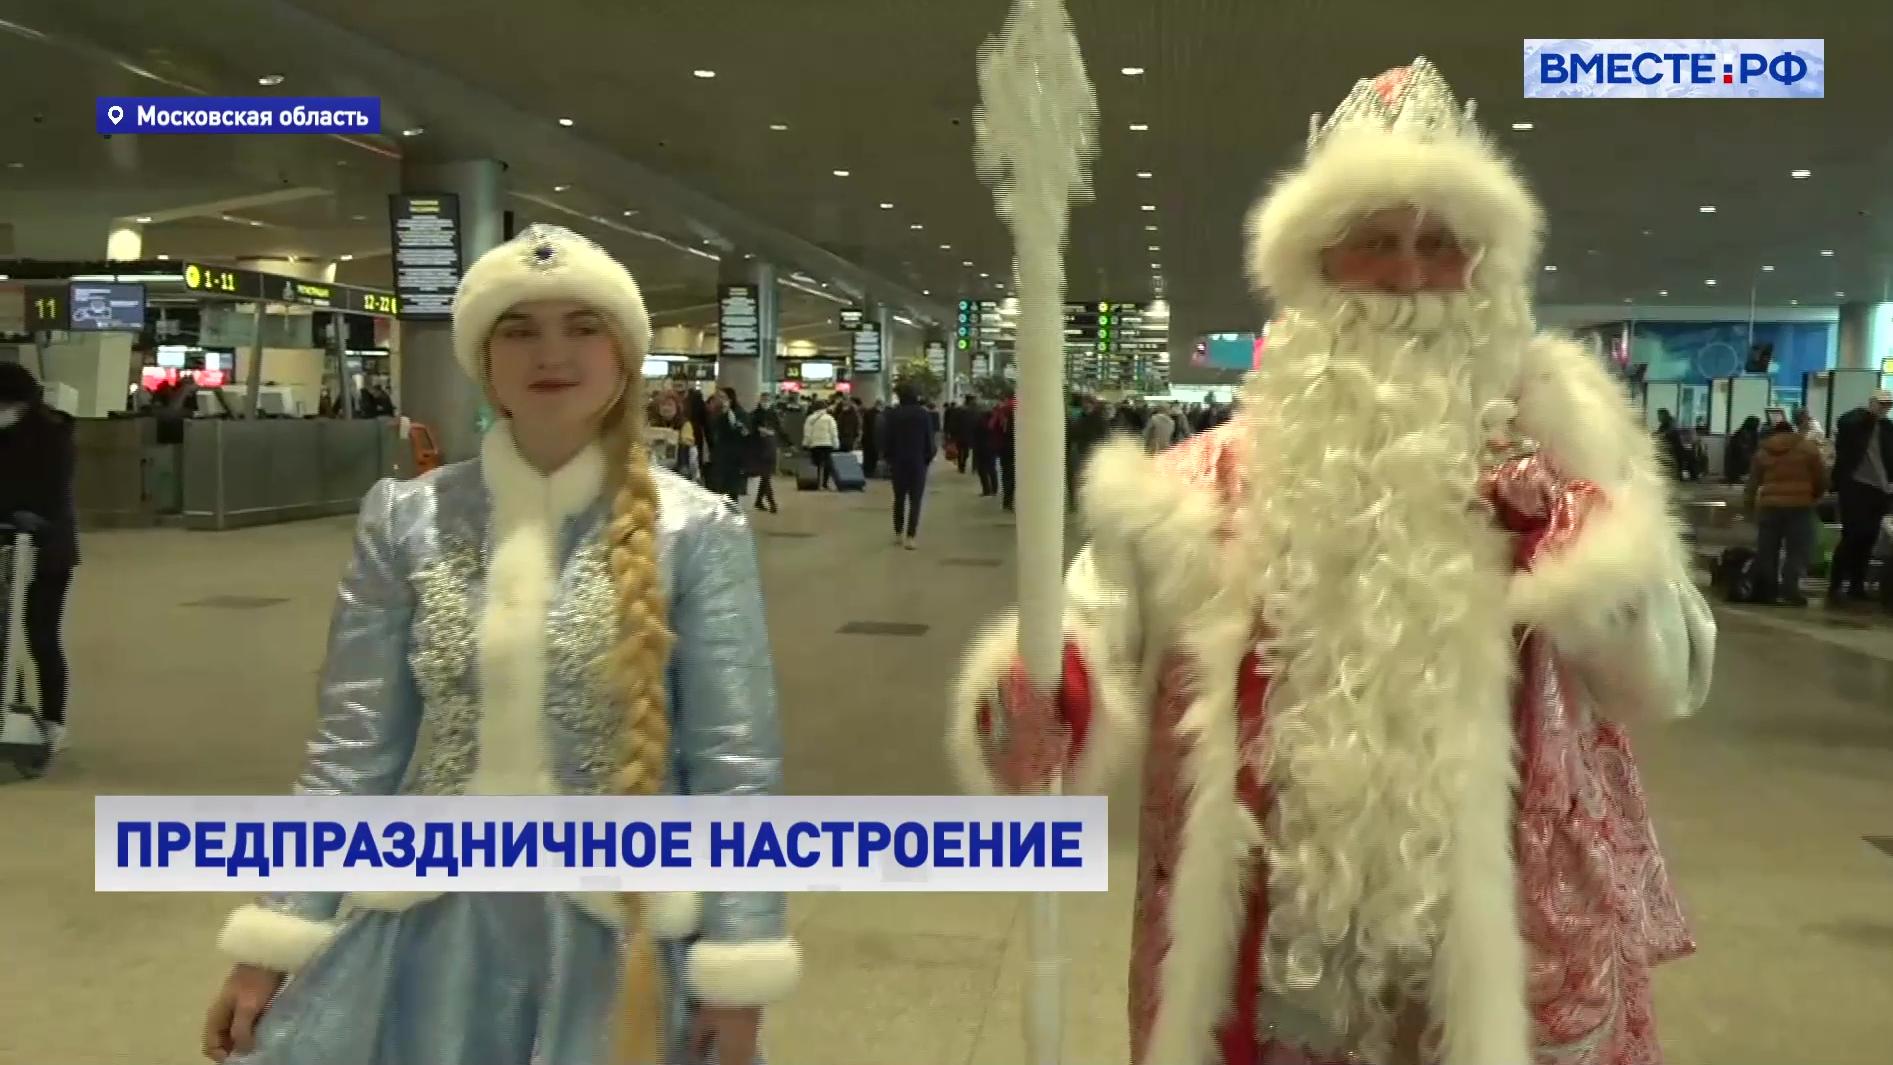 РЕПОРТАЖ: Дед Мороз и Снегурочка встречают пассажиров в аэропорту Домодедово